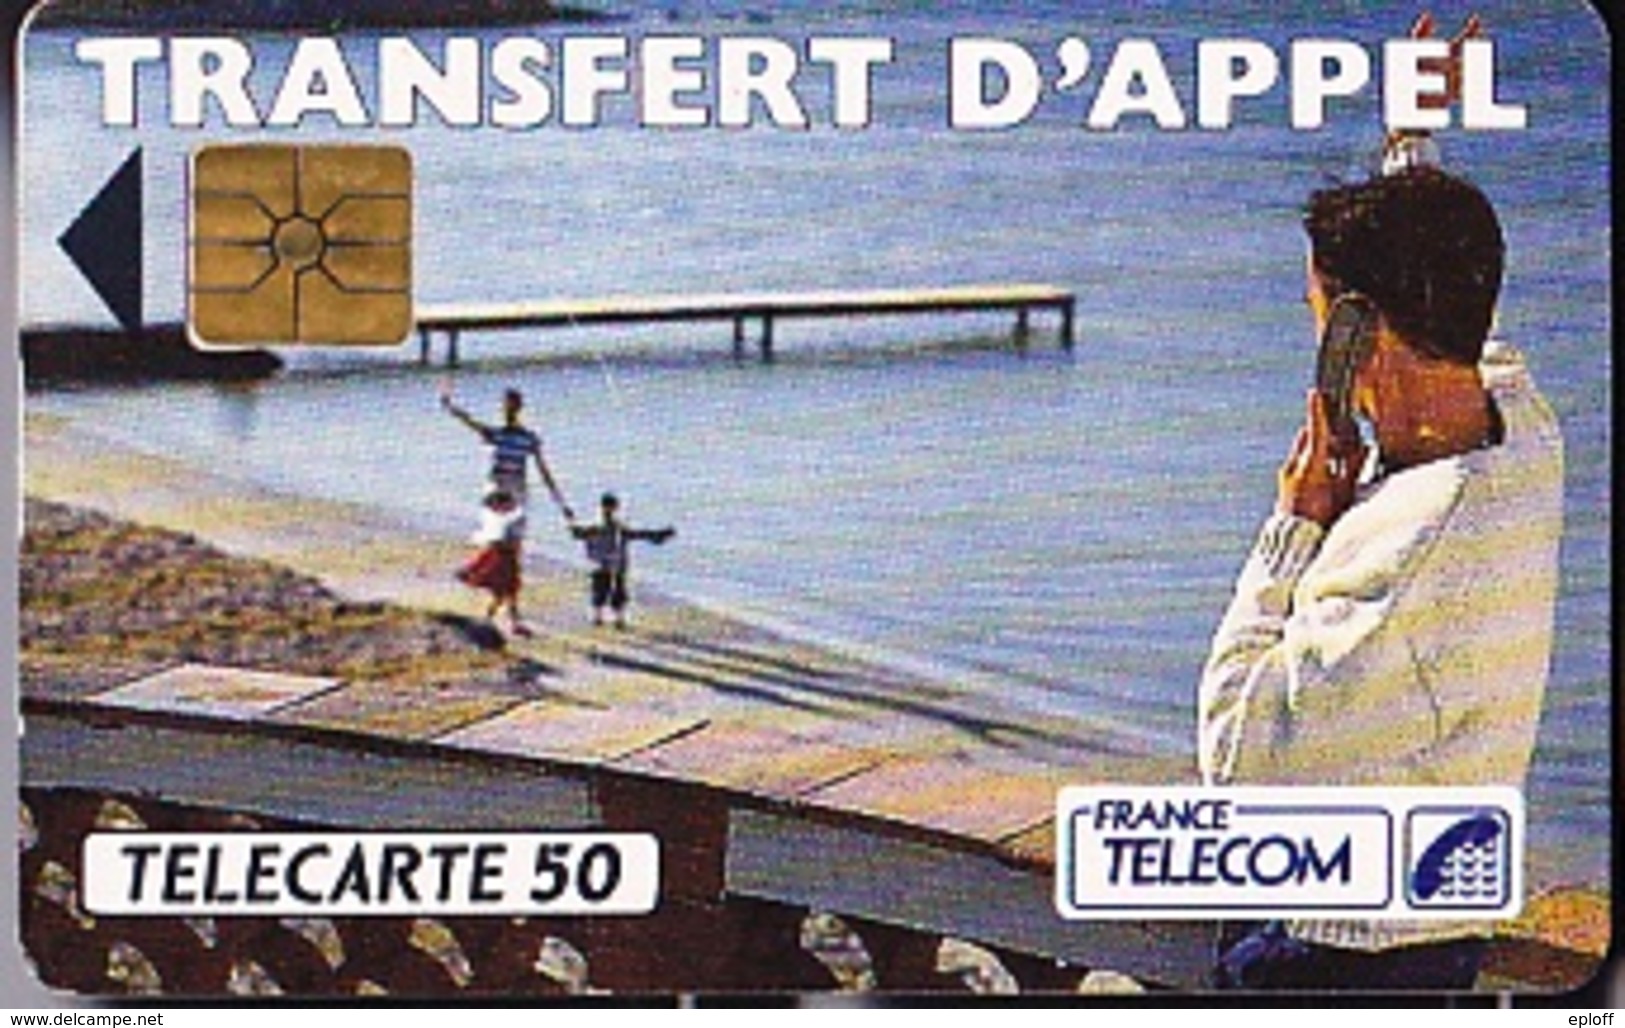 FRANCE TELECOM 50 Unités  Transfert D'Appel  De 06 1992    Tirage De 1 000 000 D'exemplaires - Opérateurs Télécom